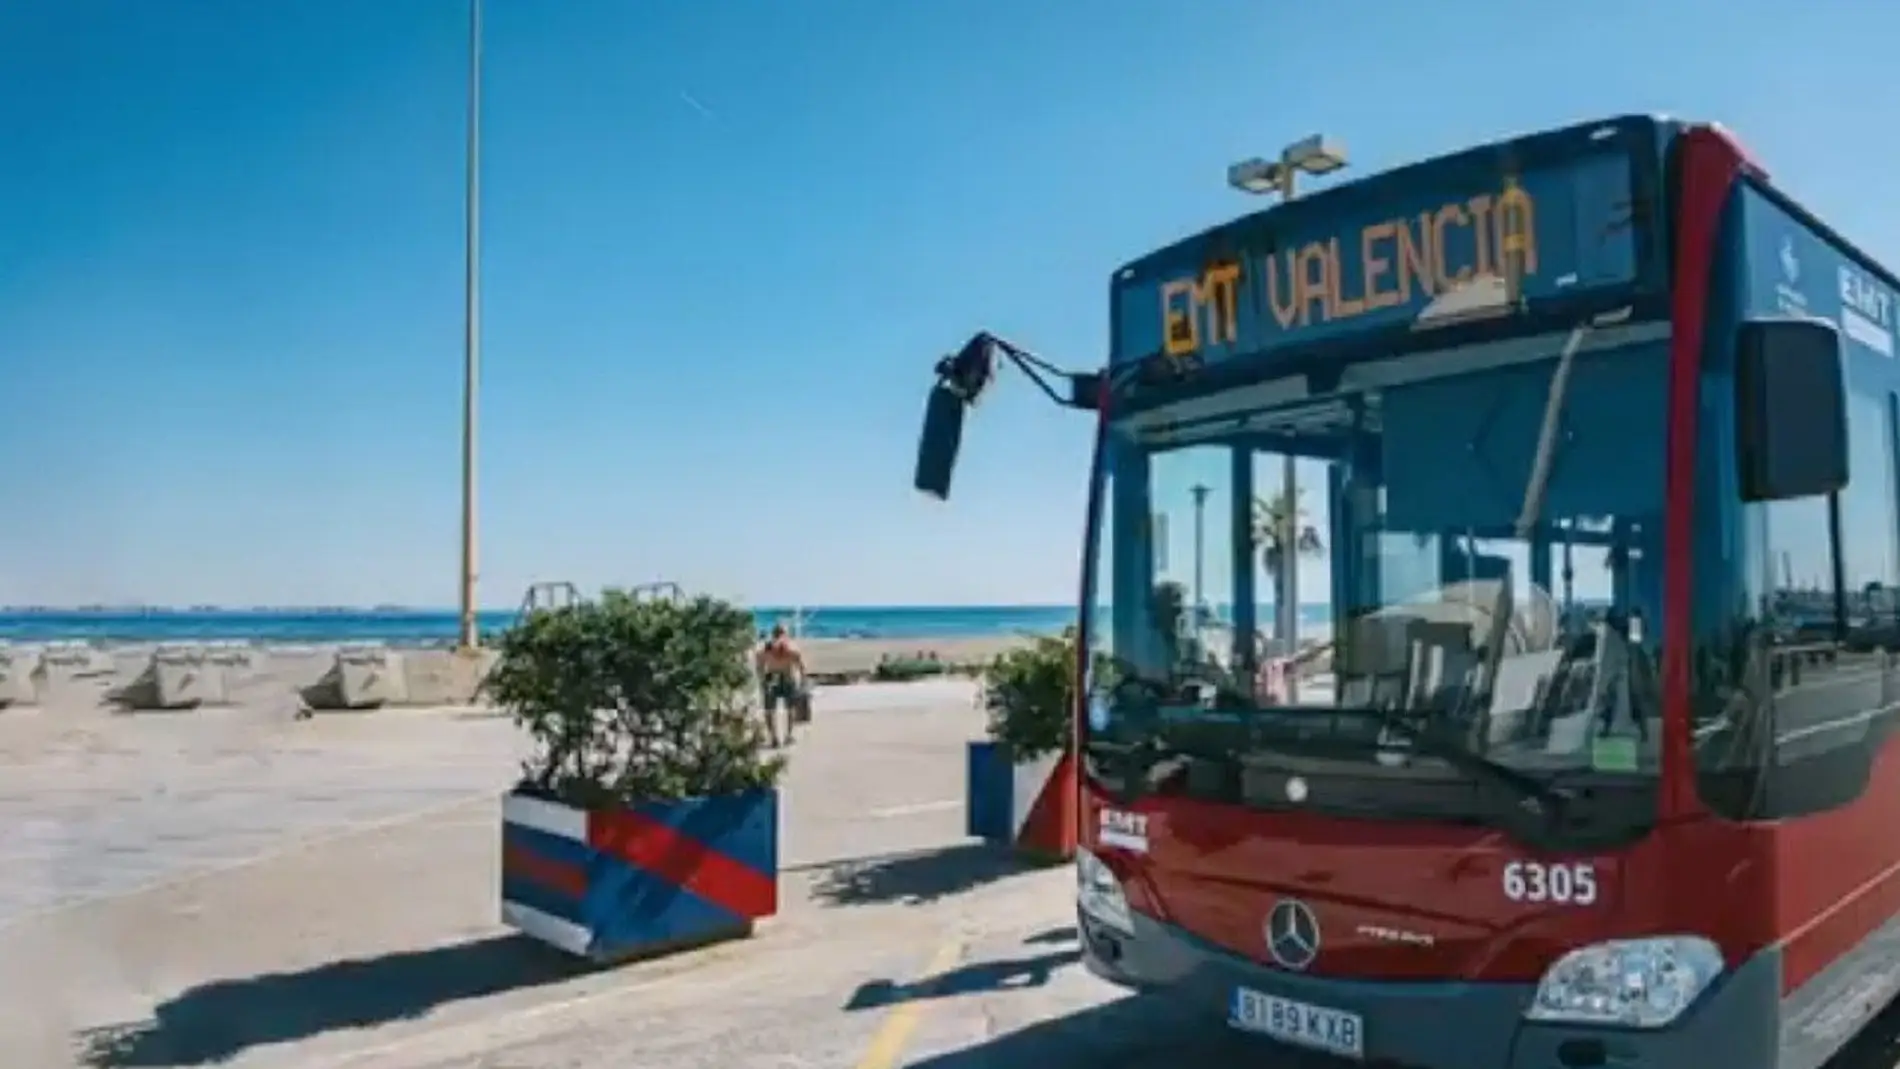 Autobús de EMT València 